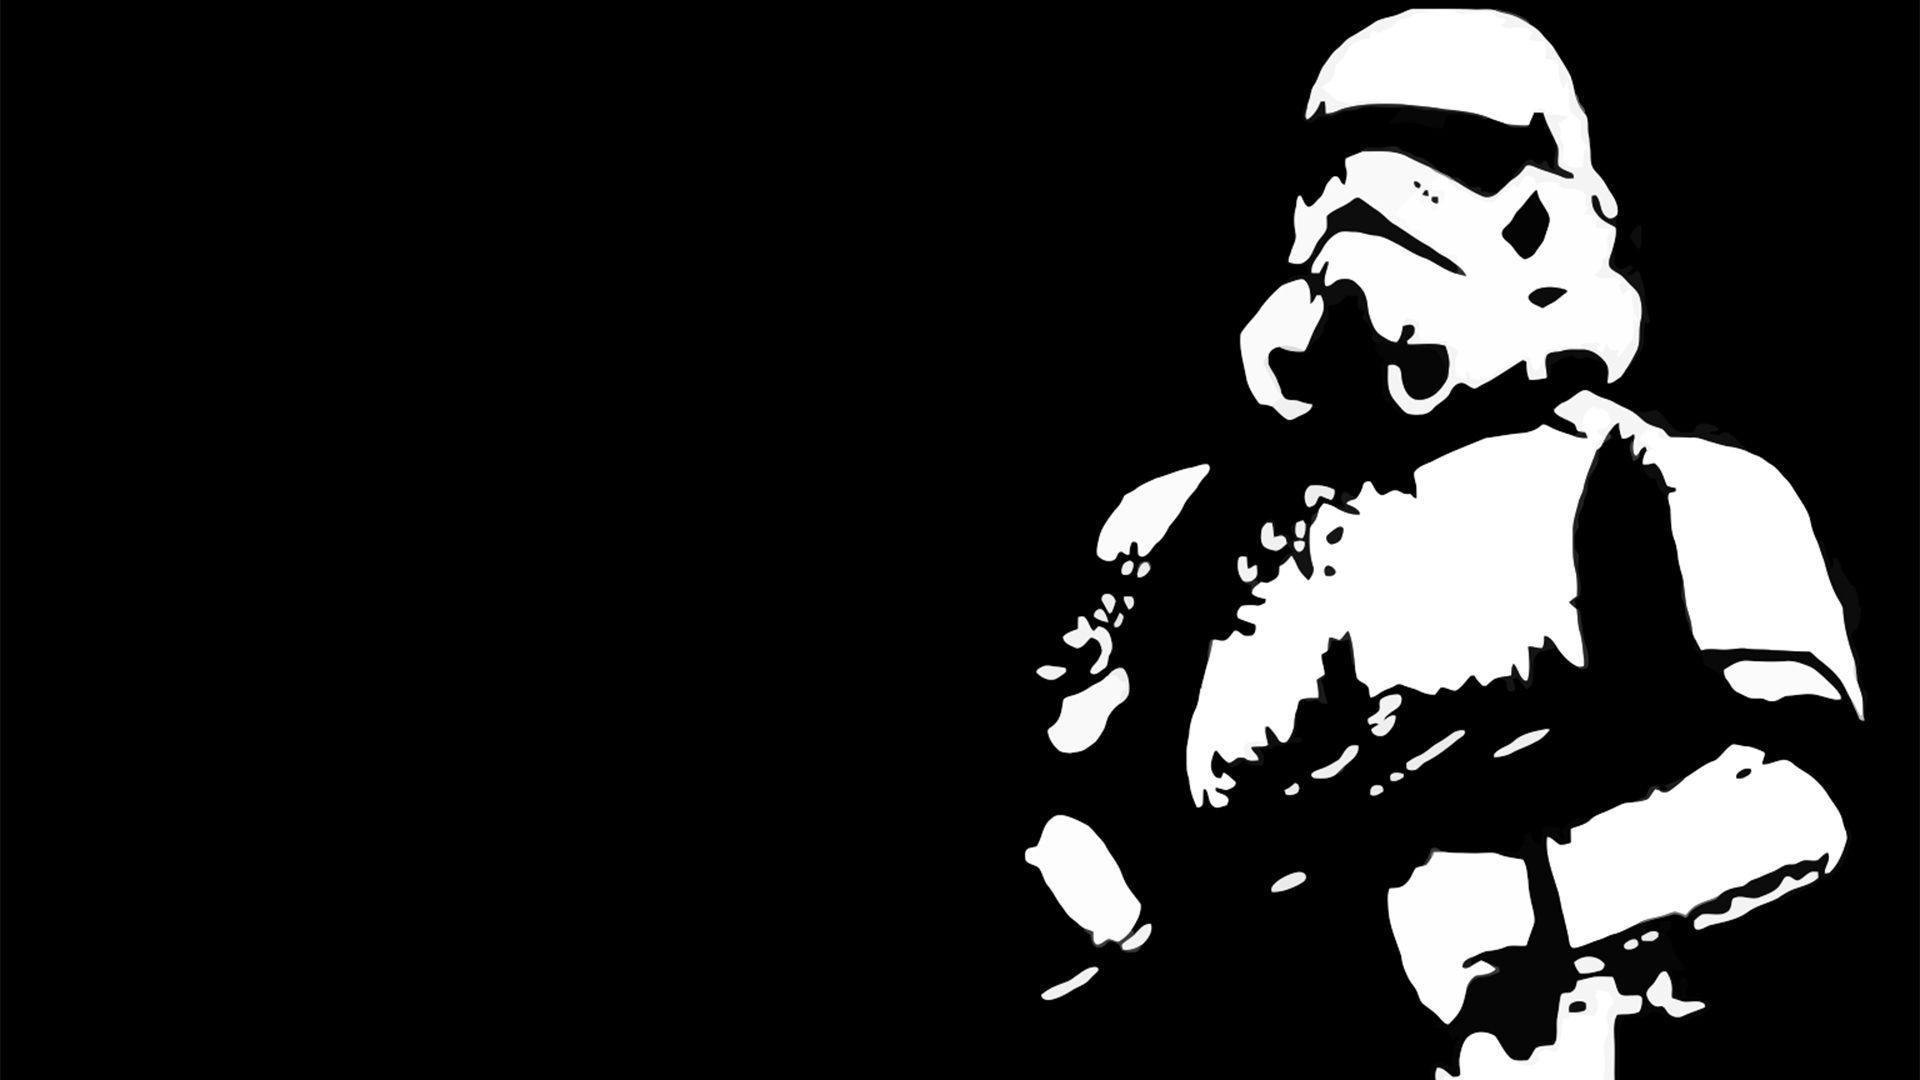 Star Wars Stormtrooper Wallpaper 1920x1080PX Star Wars